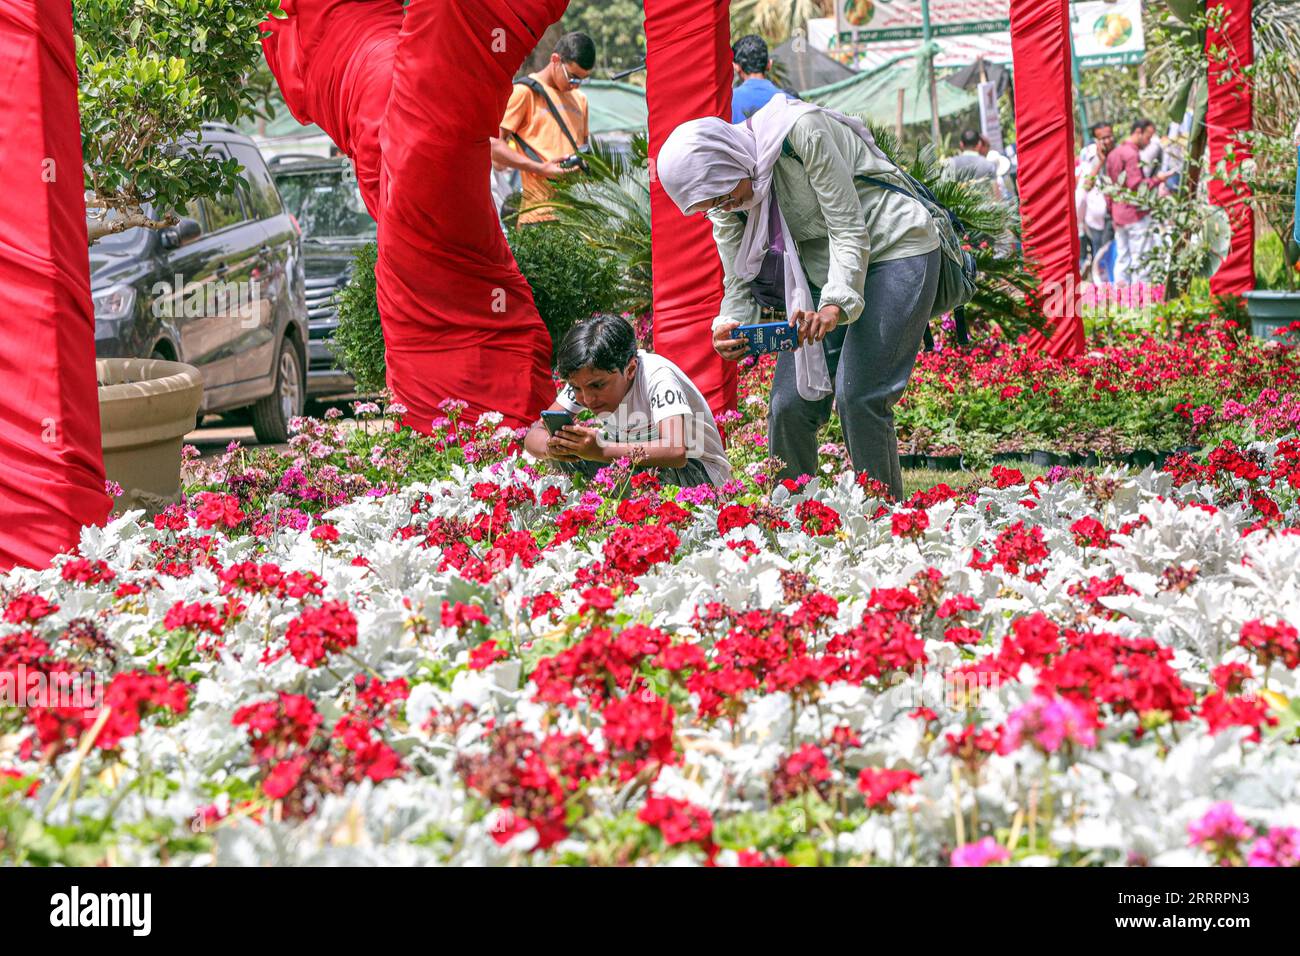 230609 -- IL CAIRO, 9 giugno 2023 -- la gente scatta foto di fiori alla Spring Flowers Exhibition al Cairo, Egitto, il 3 giugno 2023. Fiori colorati, piante ornamentali, arbusti e piantine, nonché attrezzi e accessori per giardinaggio e paesaggistica, sono tutti ordinatamente esposti da decine di espositori alla 90esima edizione della Mostra dei fiori primaverili tenutasi al Museo dell'Agricoltura del Cairo. PER ANDARE CON la caratteristica: Gli egiziani gravitano su scintillanti fiori primaverili expo al CAIRO EGITTO-CAIRO-PRIMAVERA FIORI MOSTRA AhmedxGomaa PUBLICATIONxNOTxINxCHN Foto Stock